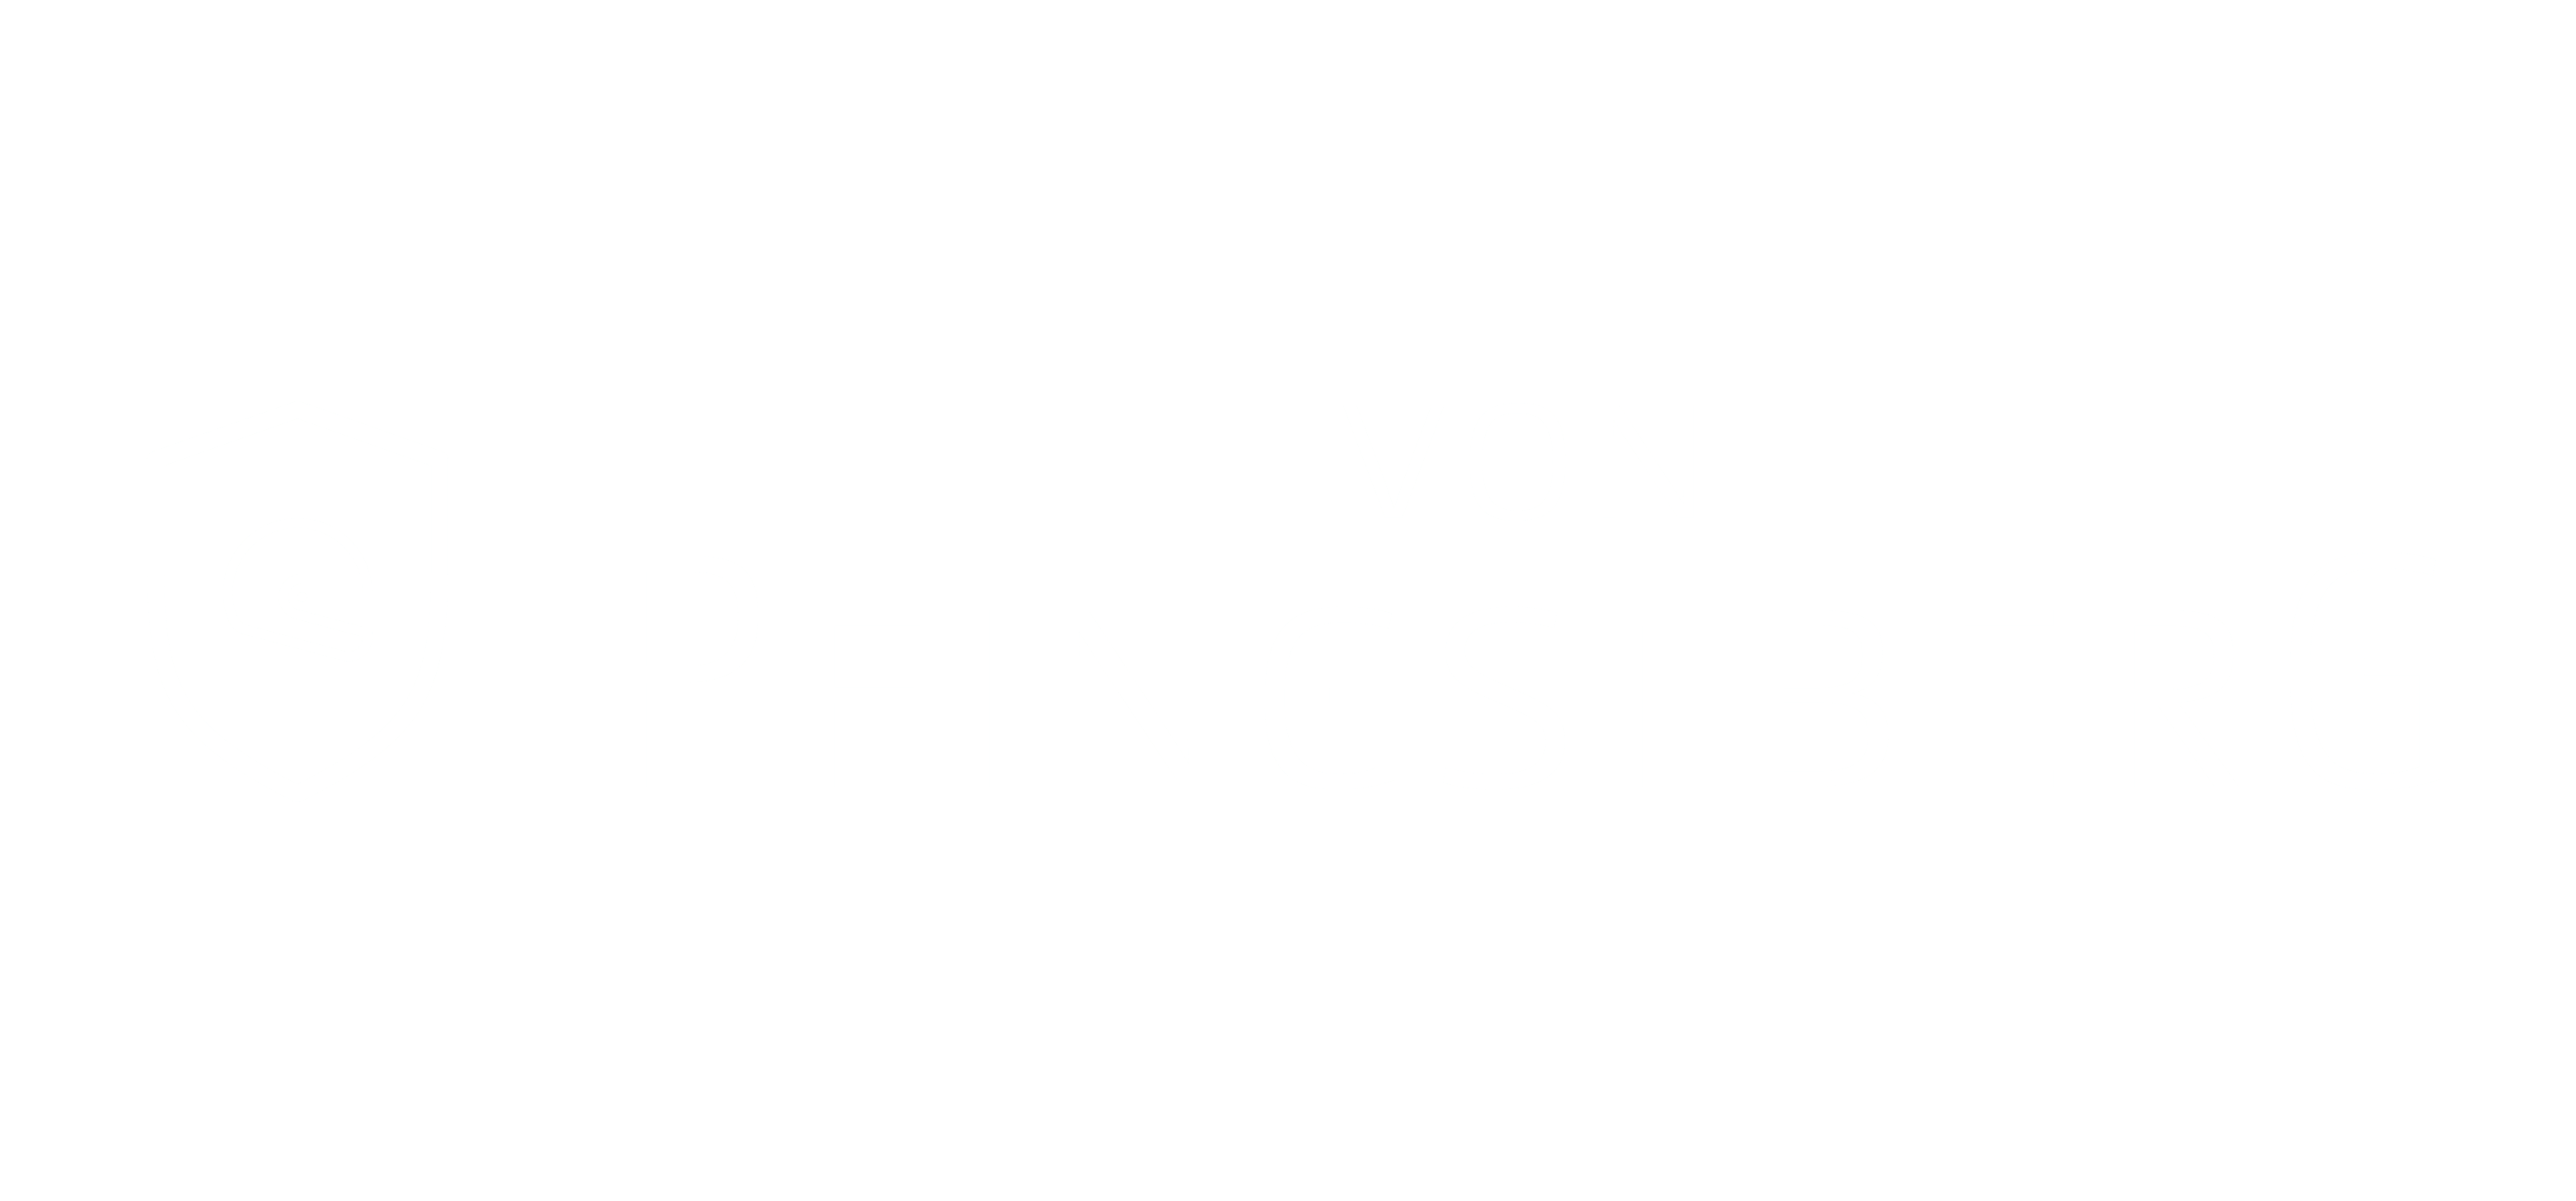 vonPfingstberg